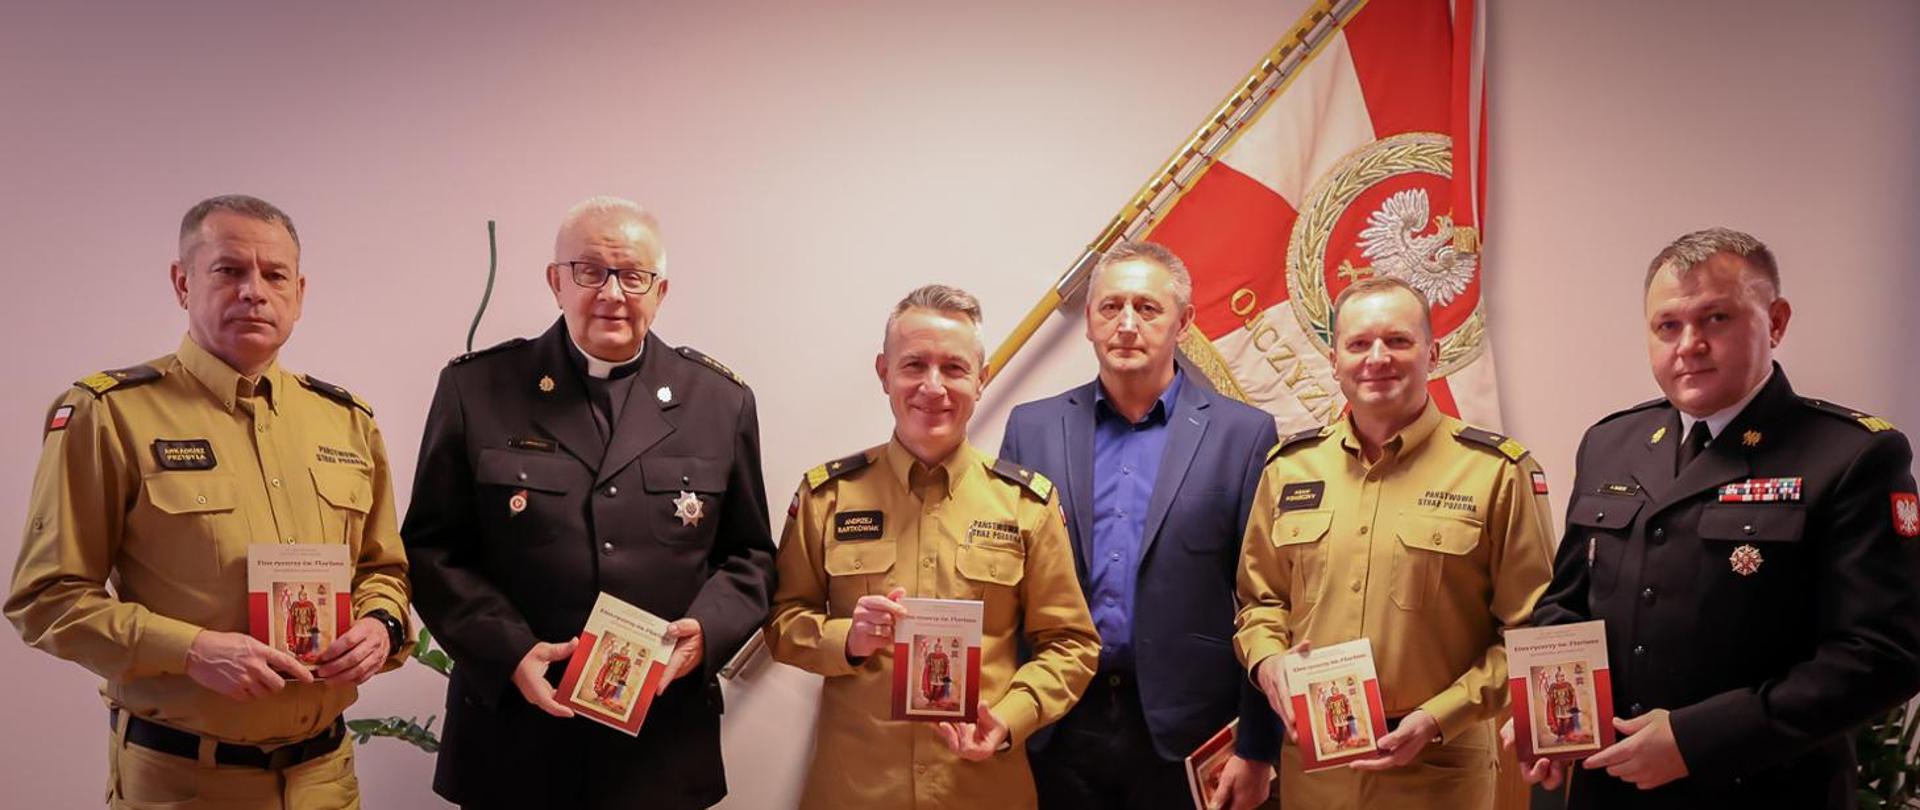 Na zdjęciu widać sześciu strażaków, którzy prezentują w dłoniach książkę "Etos Rycerzy św. Floriana"